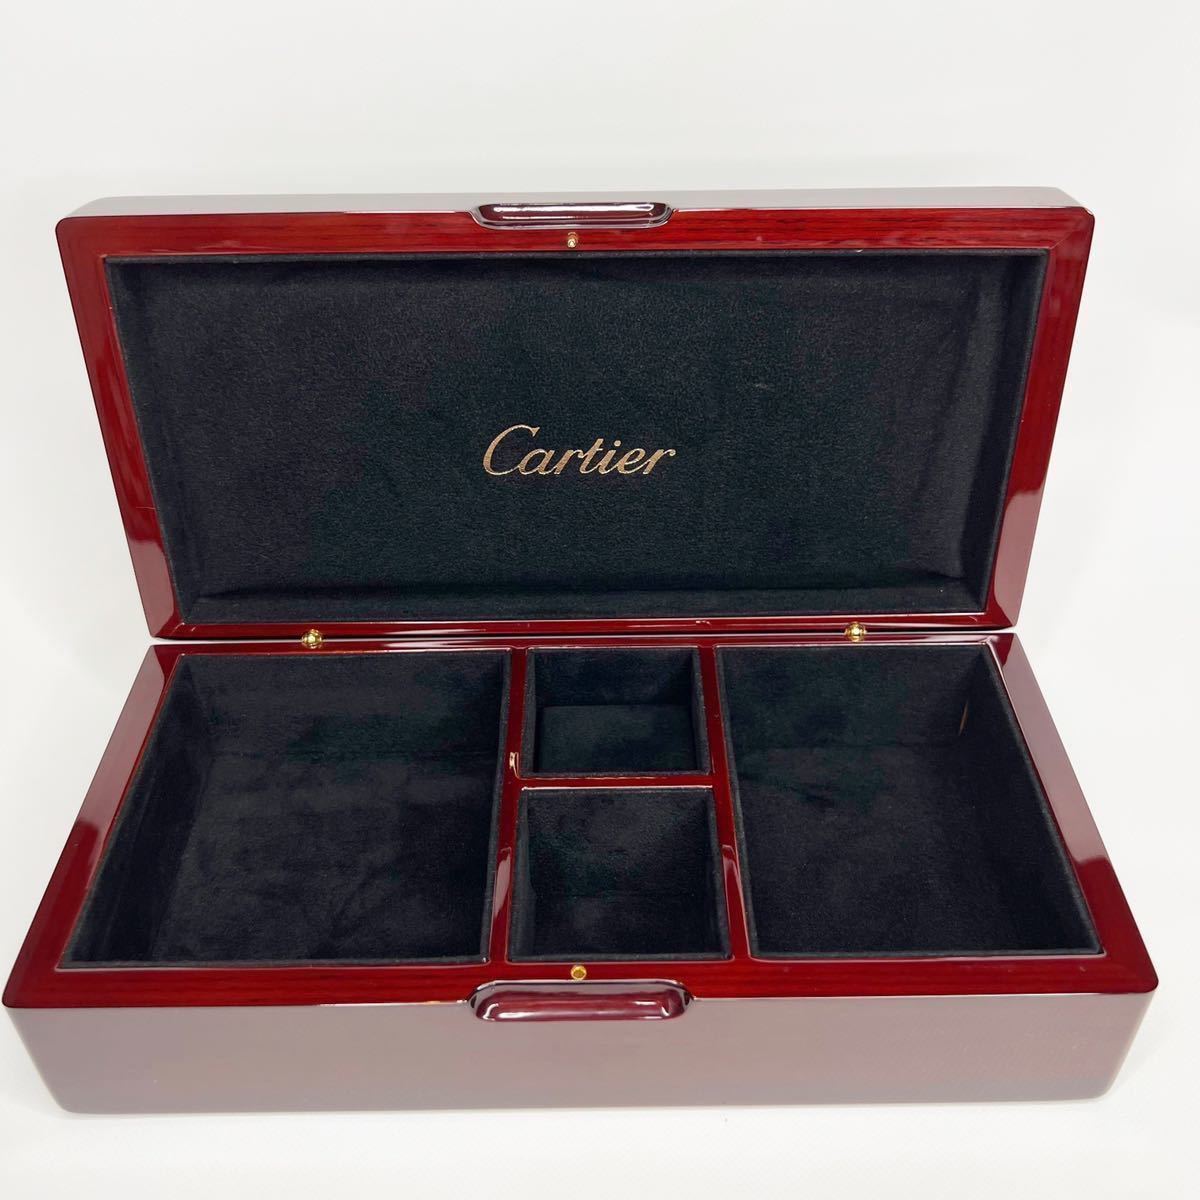 Cartier カルティエ ジュエリーボックス 木製 ヴィンテージ